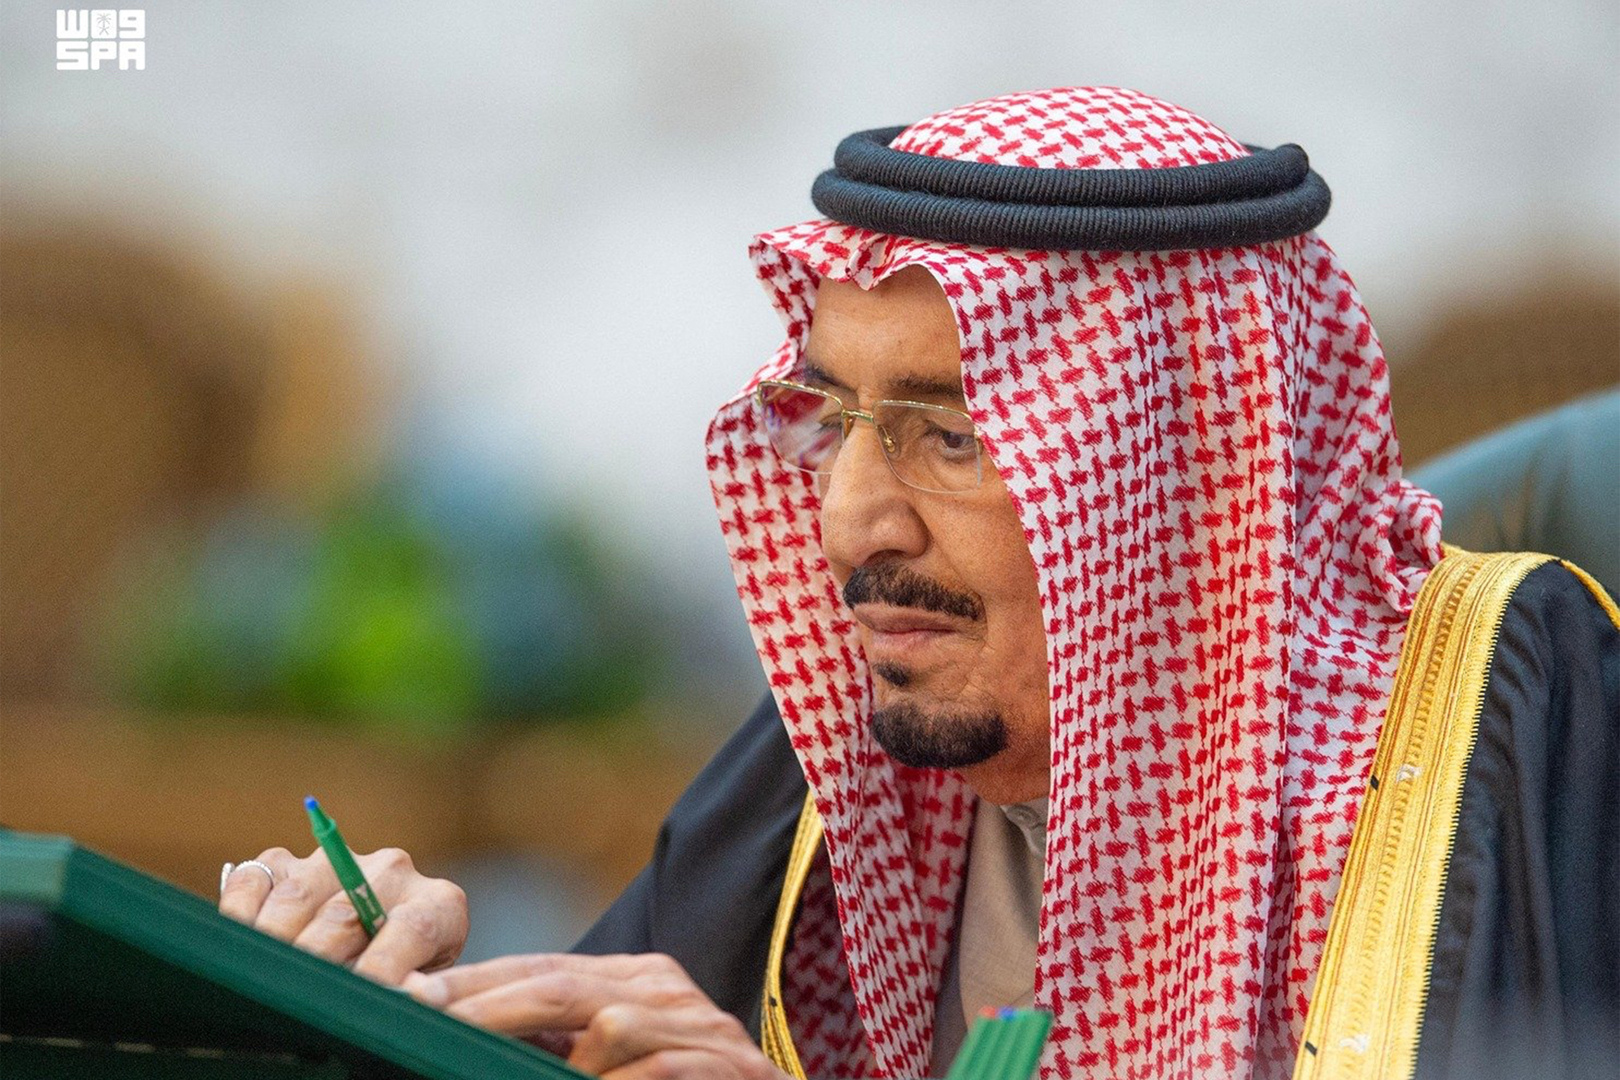 السعودية..الملك سلمان يصدر أوامر ملكية تشمل تعيينات وإعفاءات في الحرس الوطني والأمانة العامة للحكومة